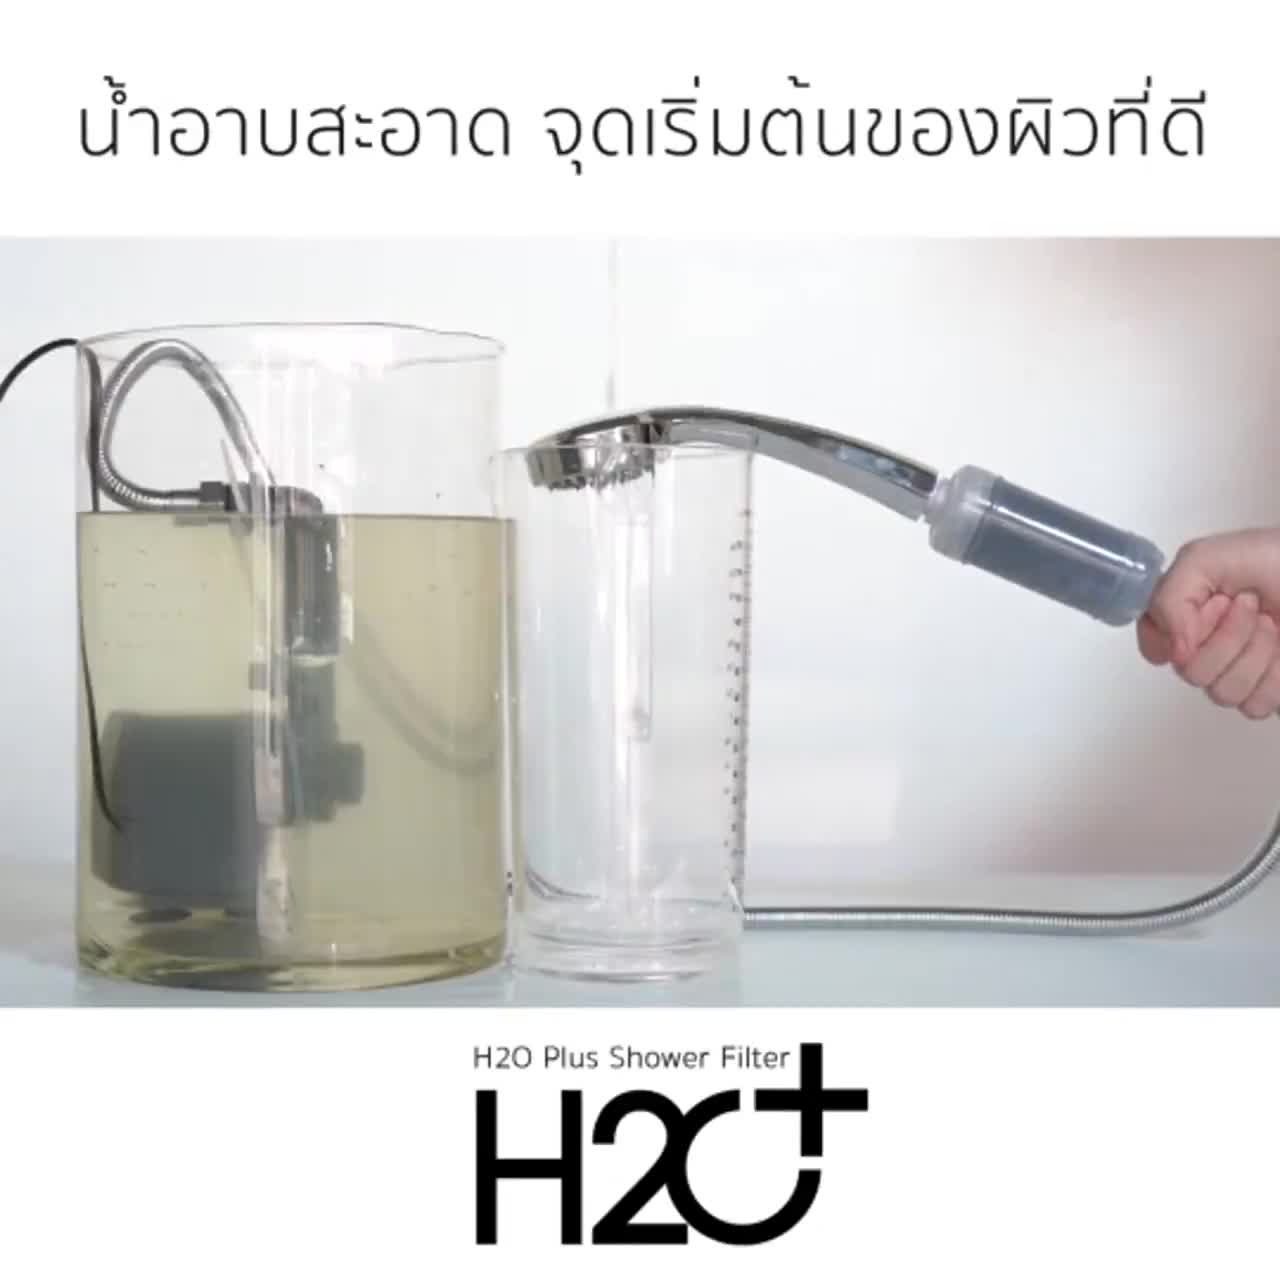 h2o-plus-shower-filter-ที่กรองน้ำฝักบัวคนเป็นสิว-ผิวแพ้ง่าย-แพ้น้ำ-แพ้คลอรีน-pp-activated-carbon-2-ชิ้น